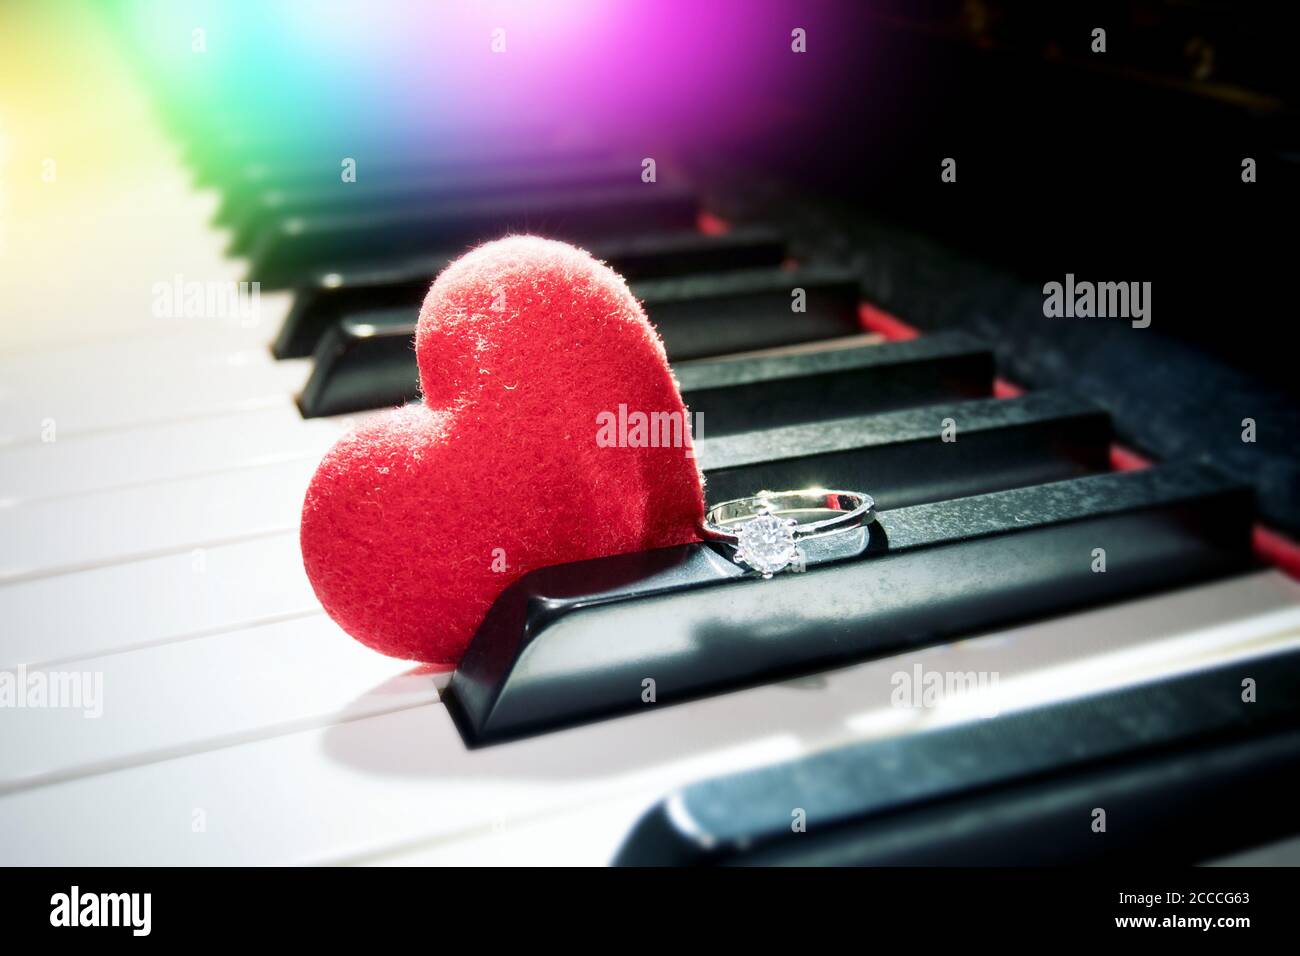 Romantisches Beziehungskonzept: Samtrotes Herz und glänzender Diamantring am Klavier Stockfoto